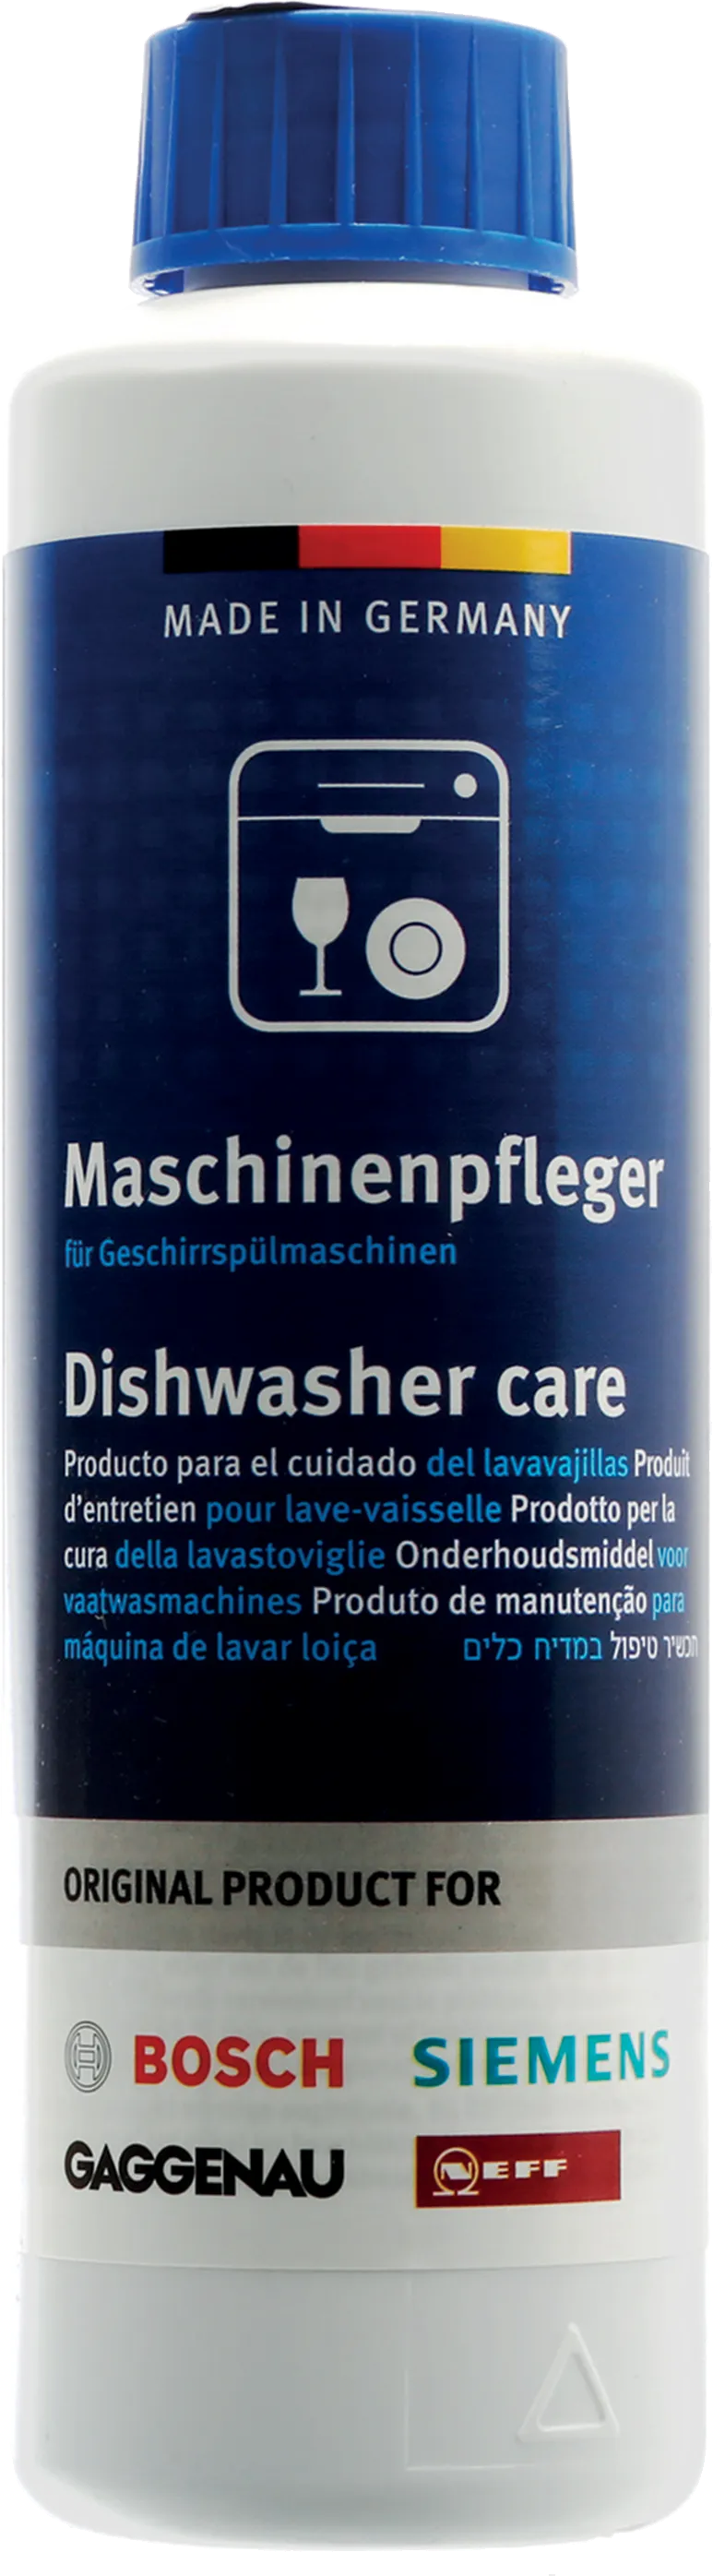 Dishwasher Care Set – 4 Pack 